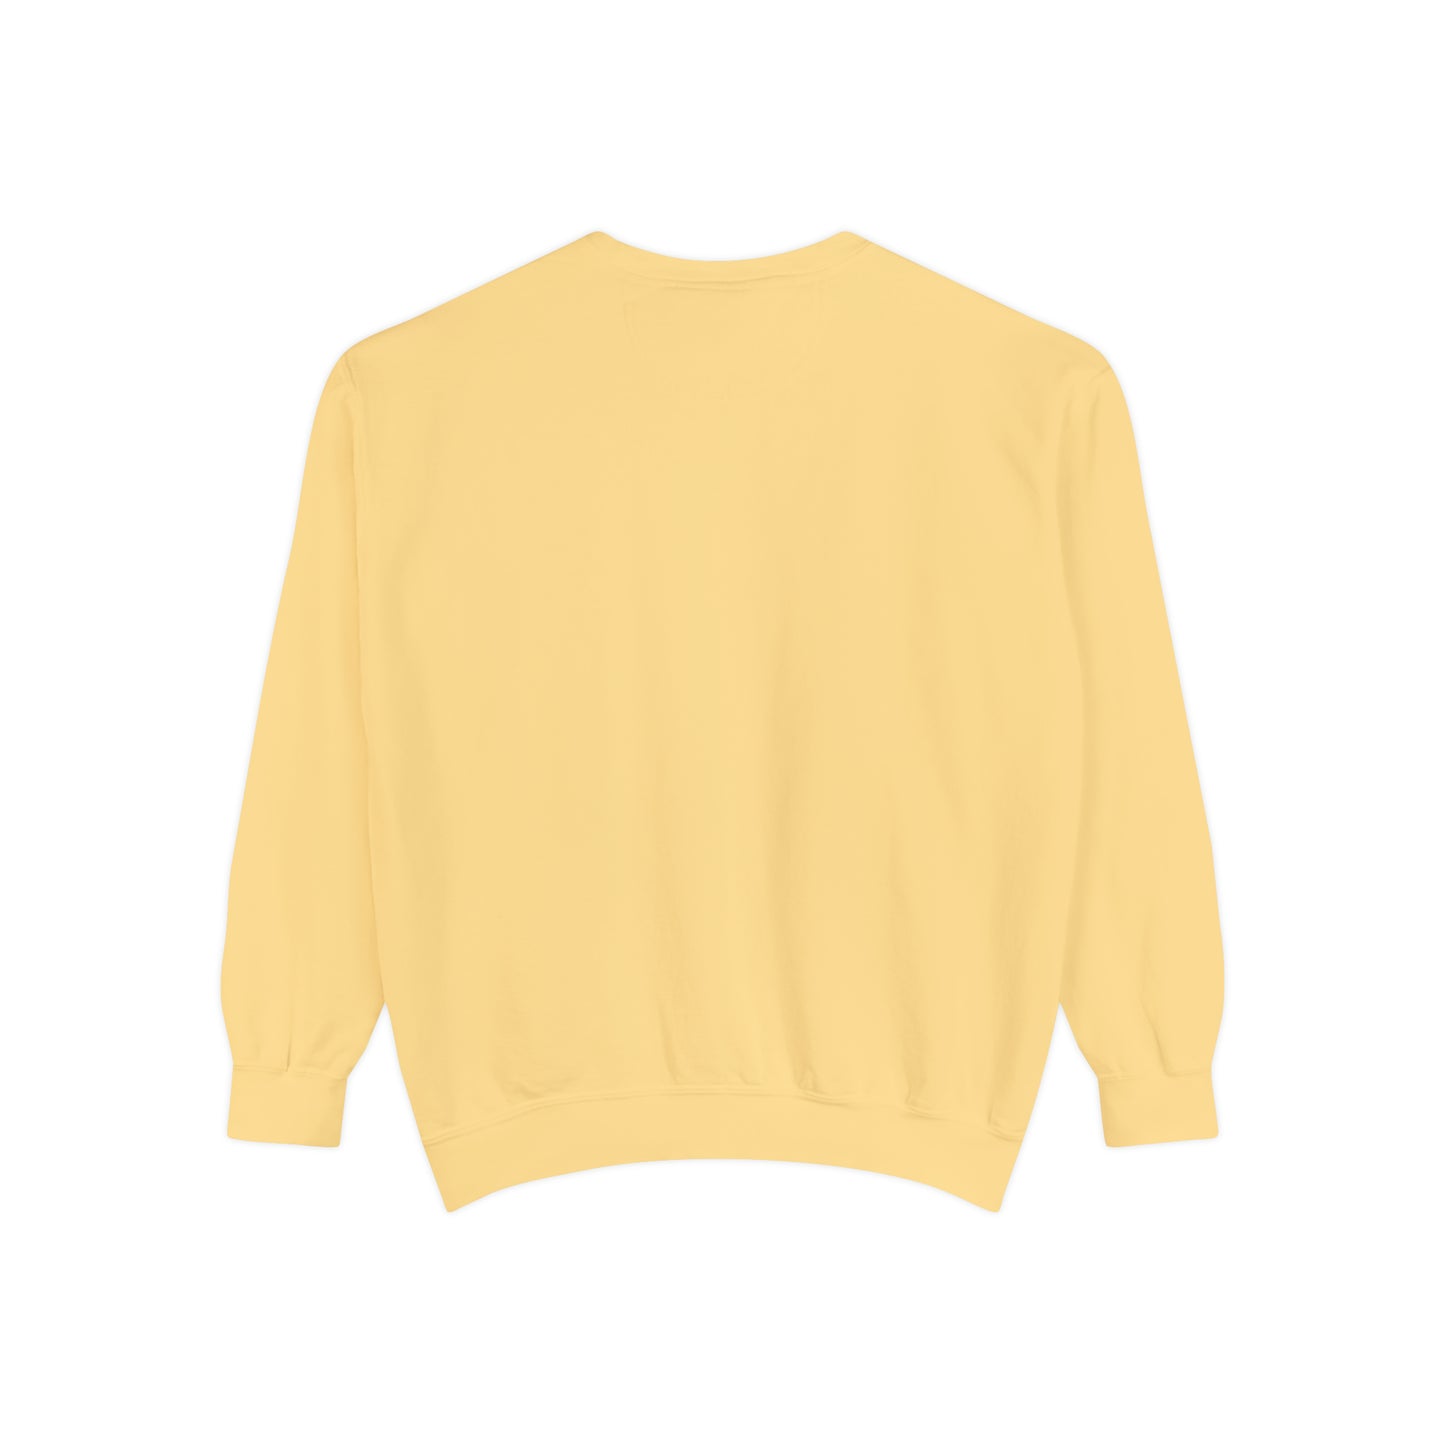 A+ Teacher Women's Garment-Dyed Sweatshirt